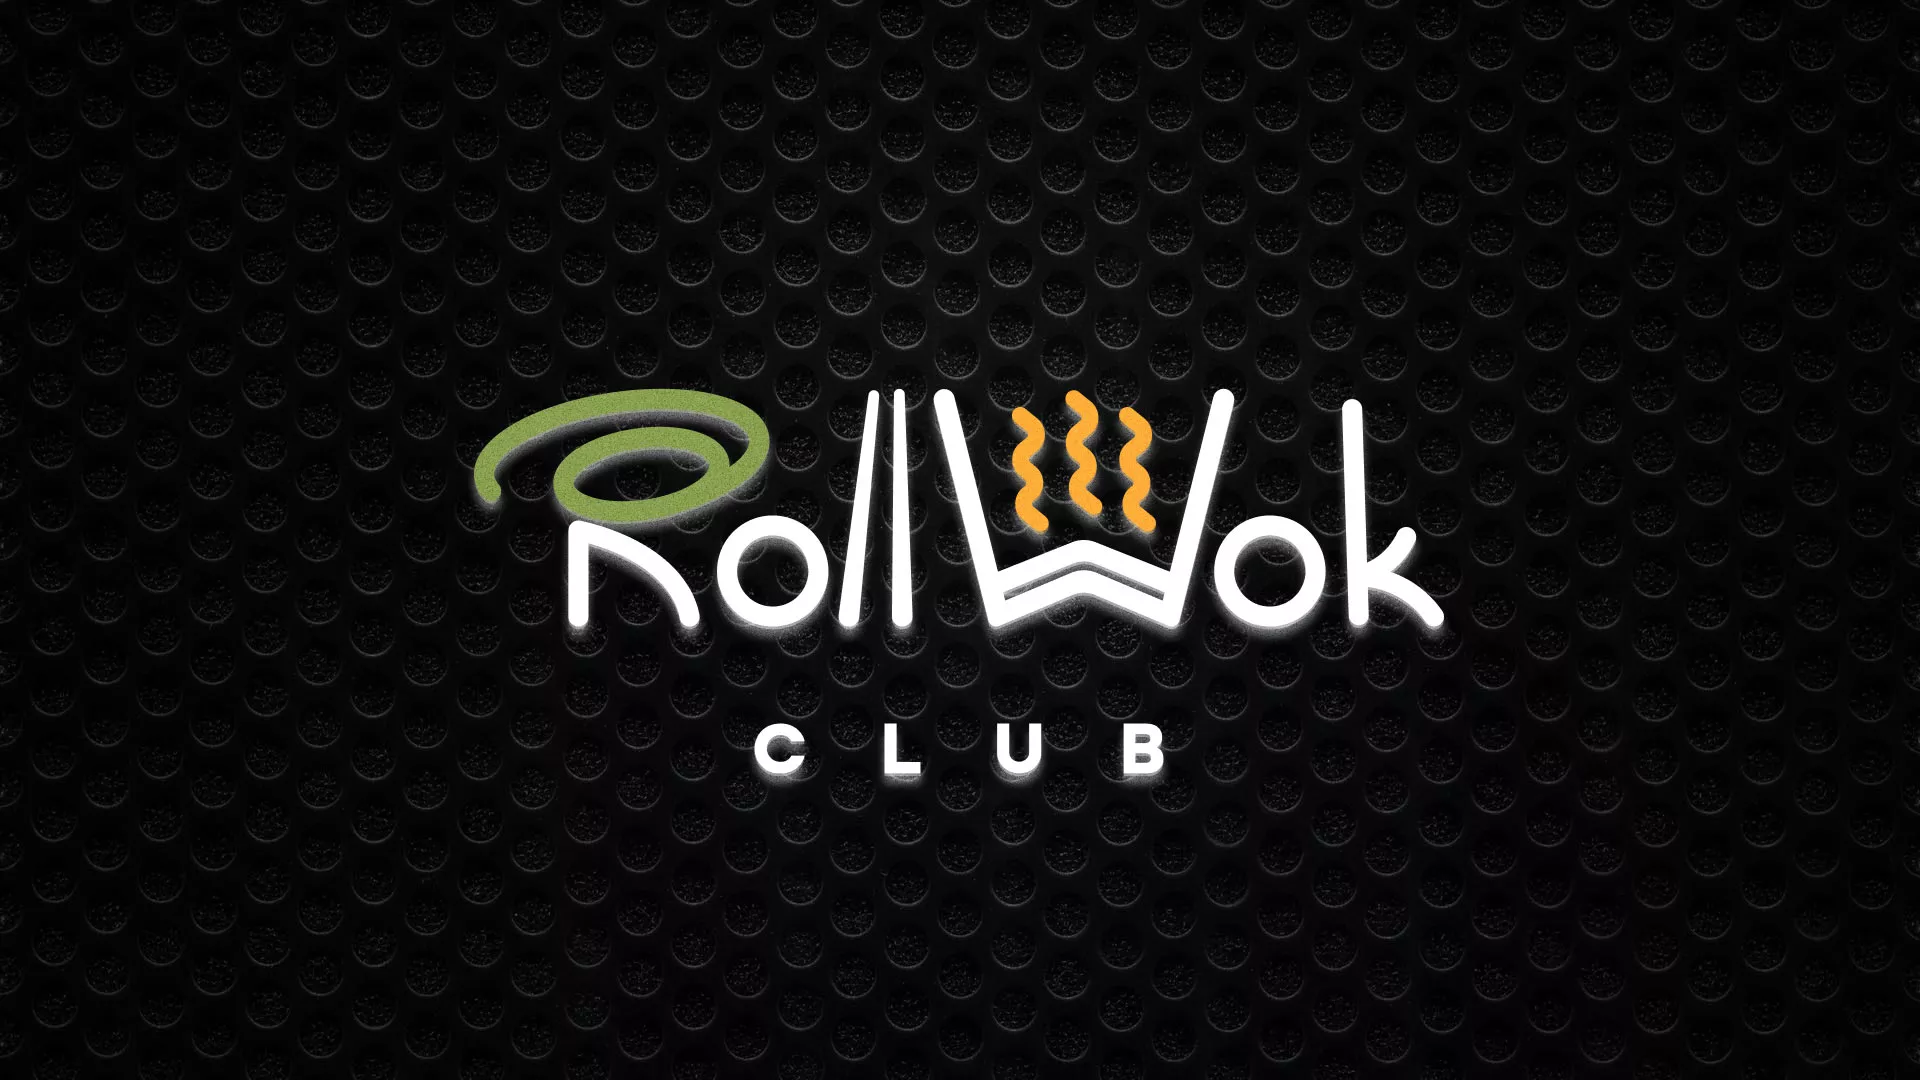 Брендирование торговых точек суши-бара «Roll Wok Club» в Костроме